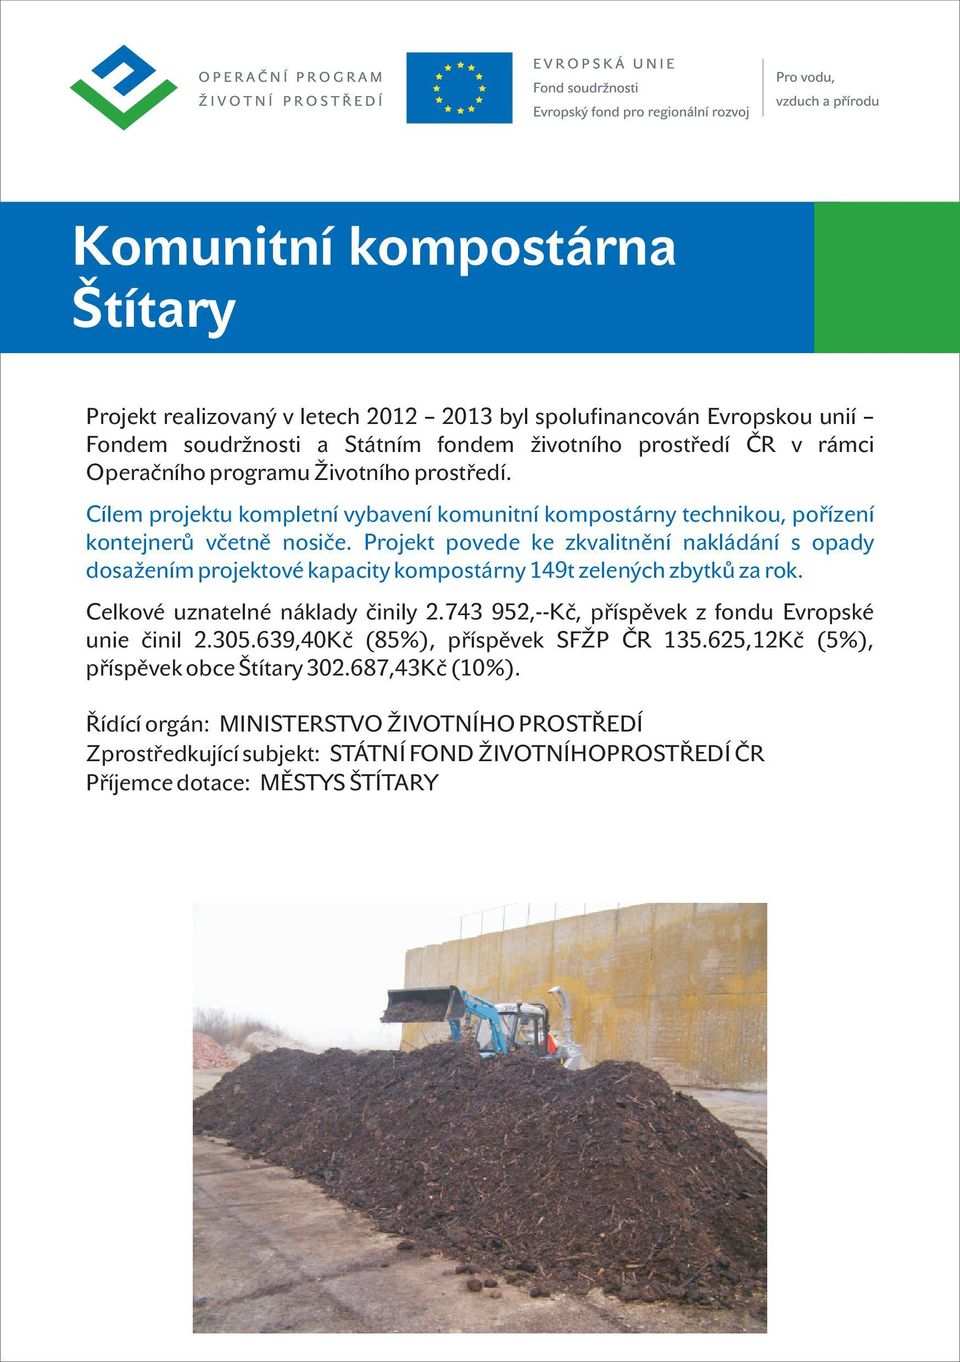 Projekt povede ke zkvalitnění nakládání s opady dosažením projektové kapacity kompostárny 149t zelených zbytků za rok. Celkové uznatelné náklady činily 2.